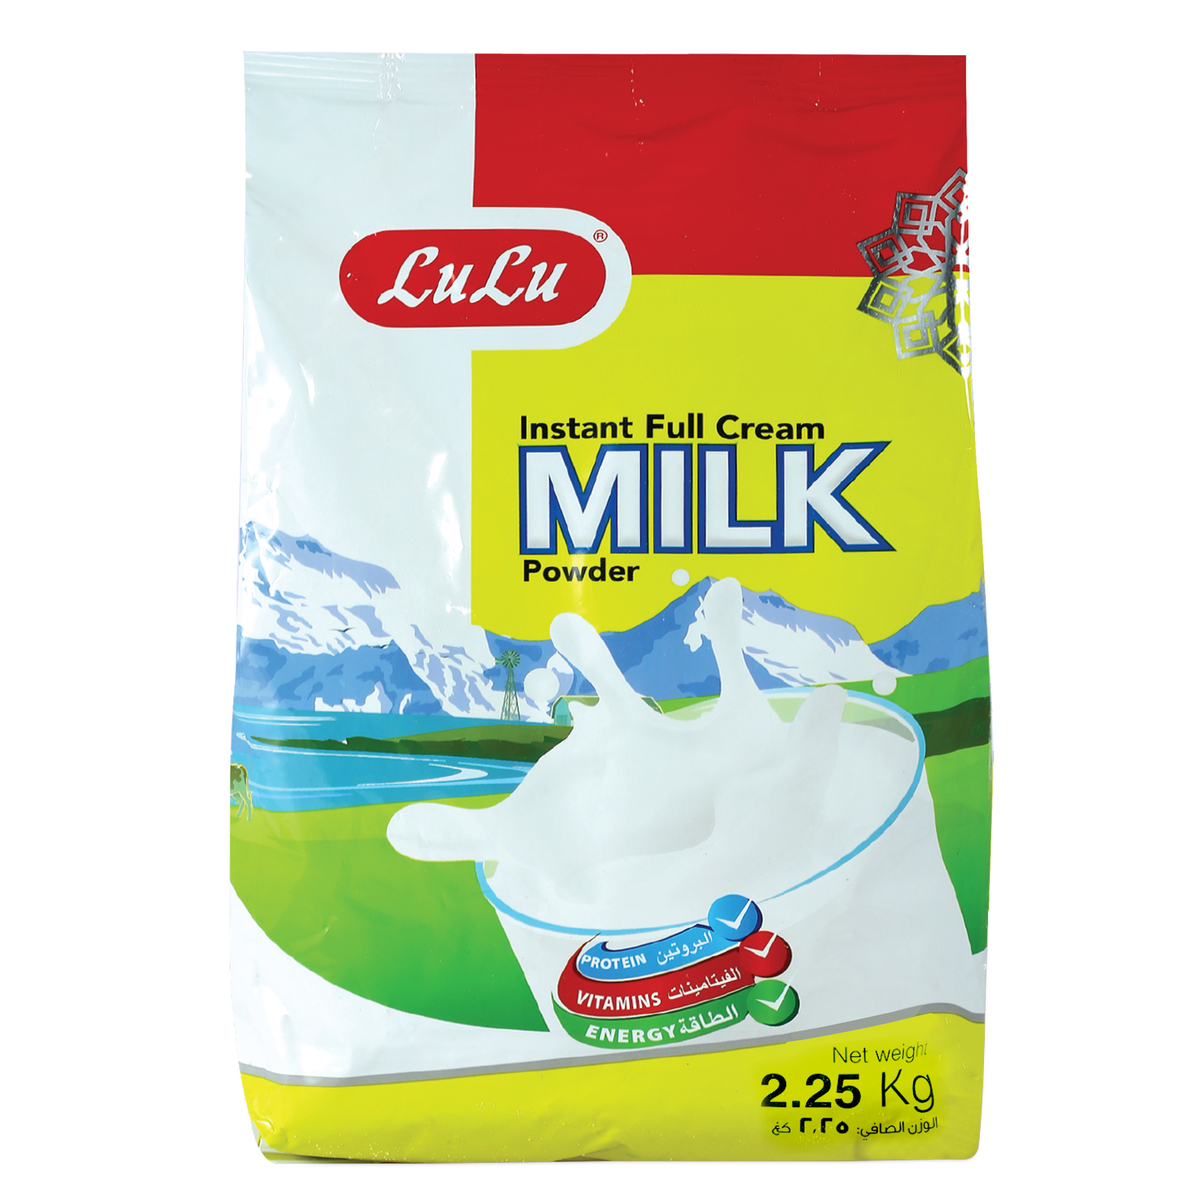 Instant Full Cream Milk Powder 2.25 kg